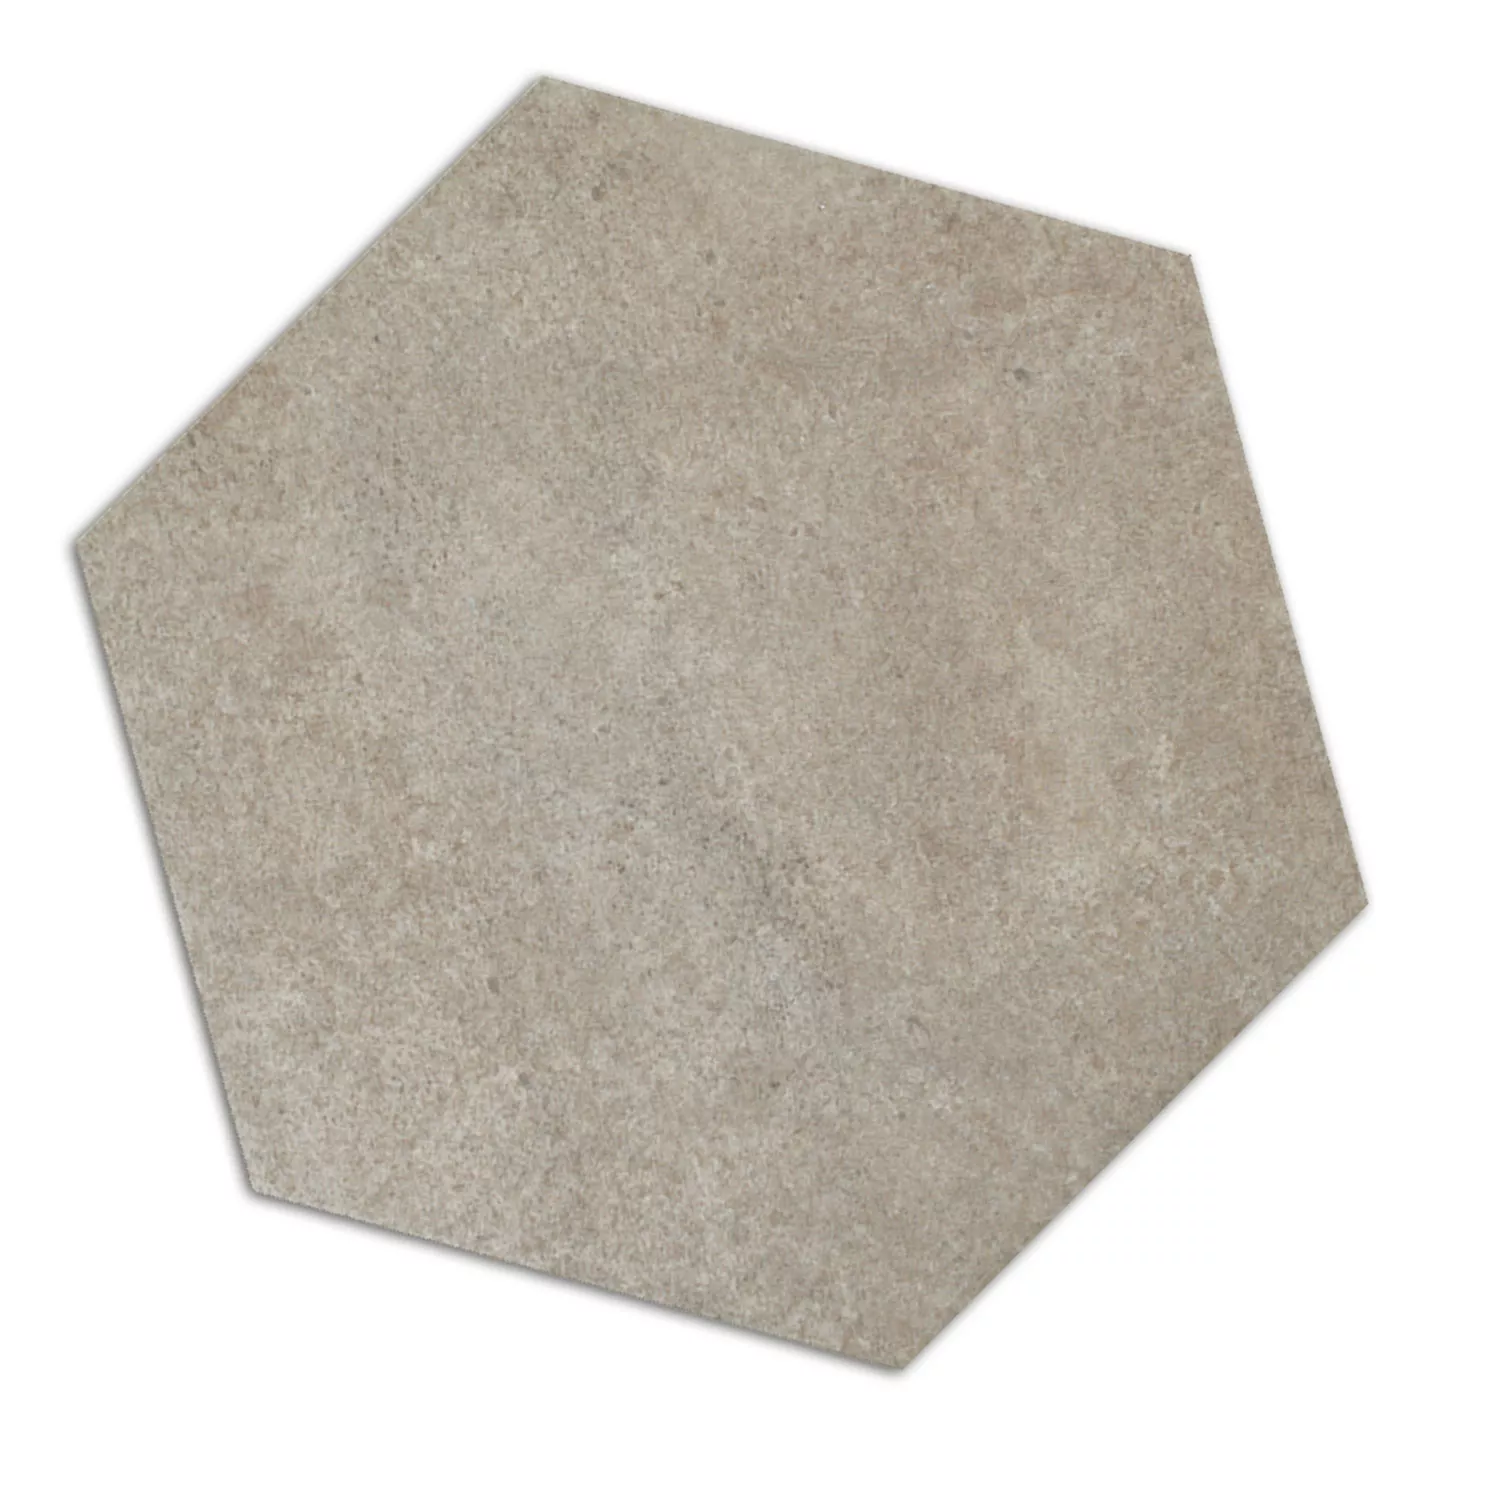 Cement Tiles Optic Hexagon Floor Tiles Atlanta Grey